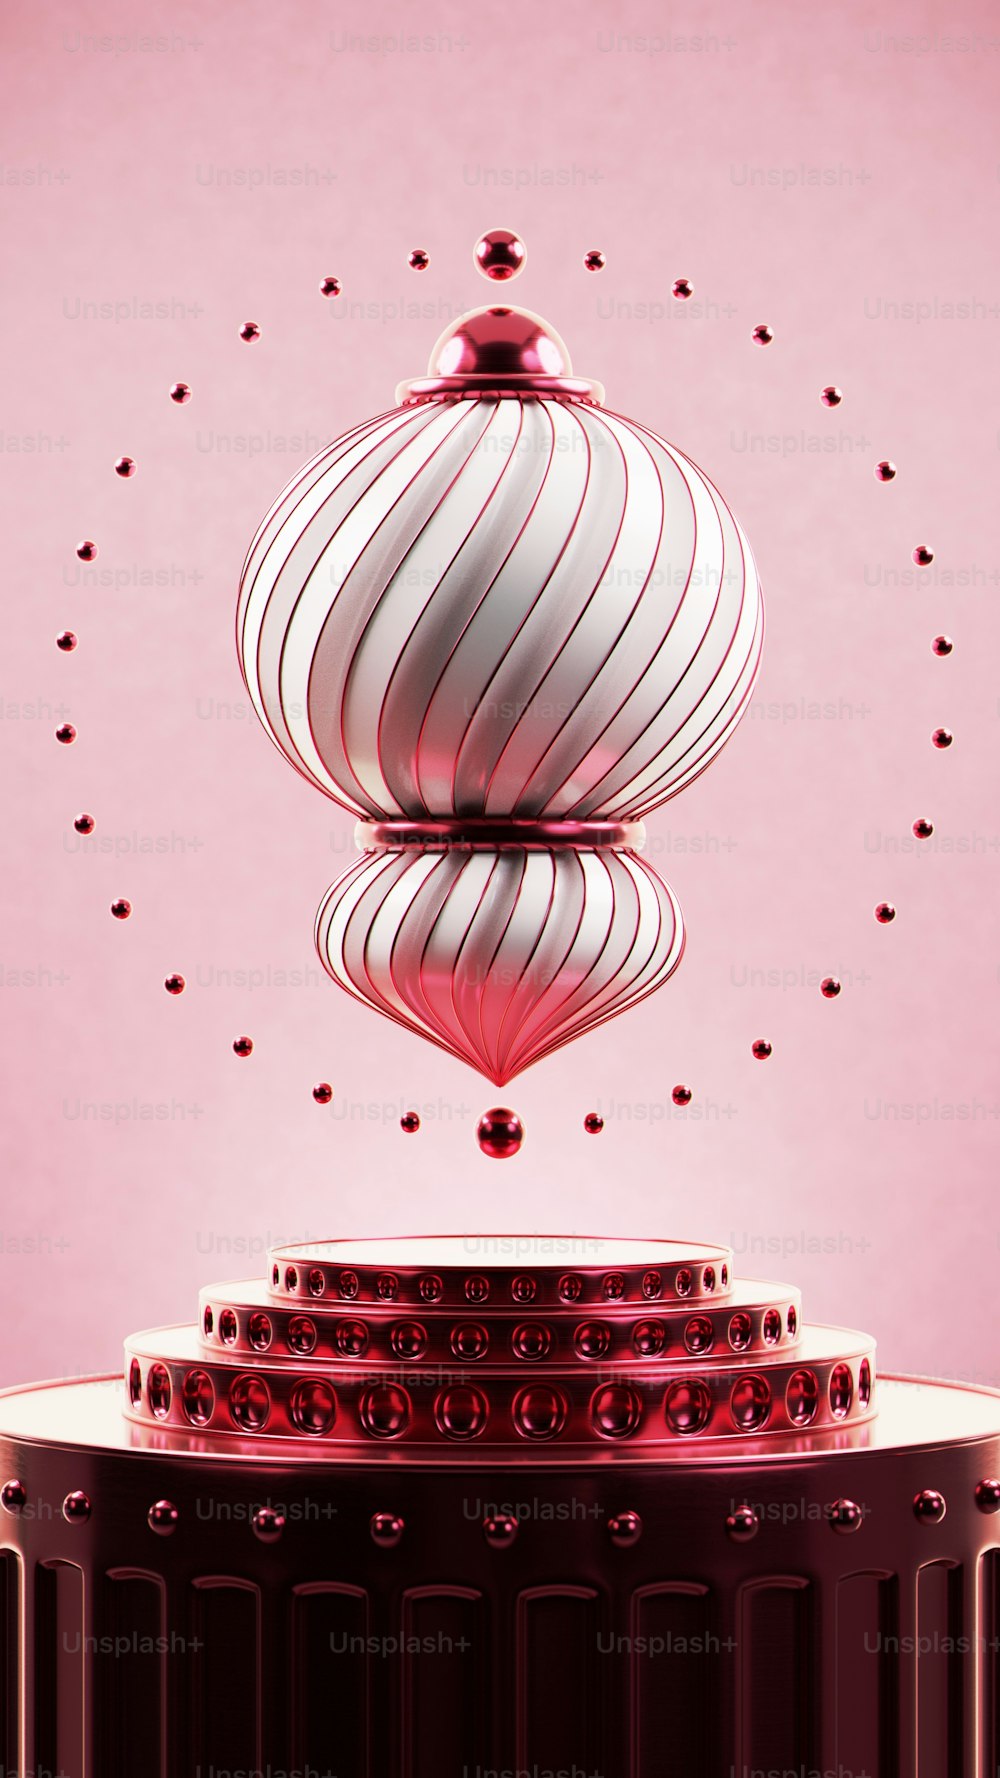 Un objeto circular rojo y blanco con un fondo rosa